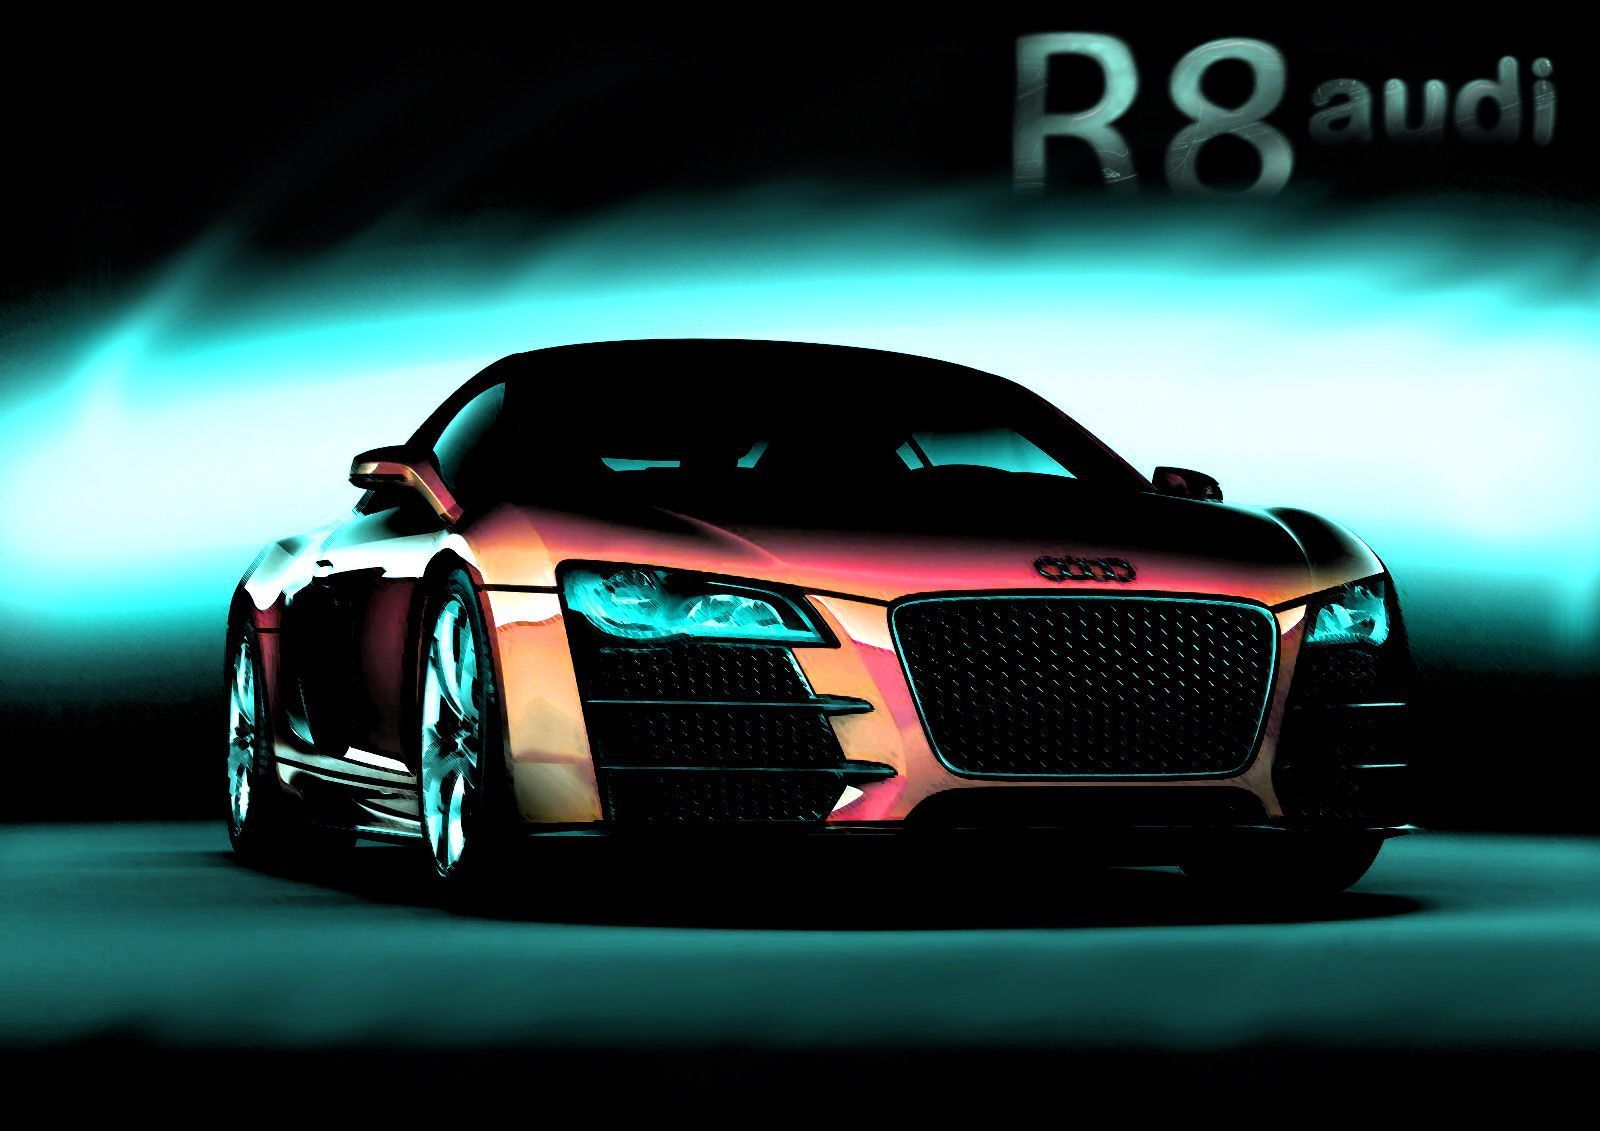 Audi R8 Wallpaper HD For PC 14337 Full HD Wallpaper Desktop - Res ...